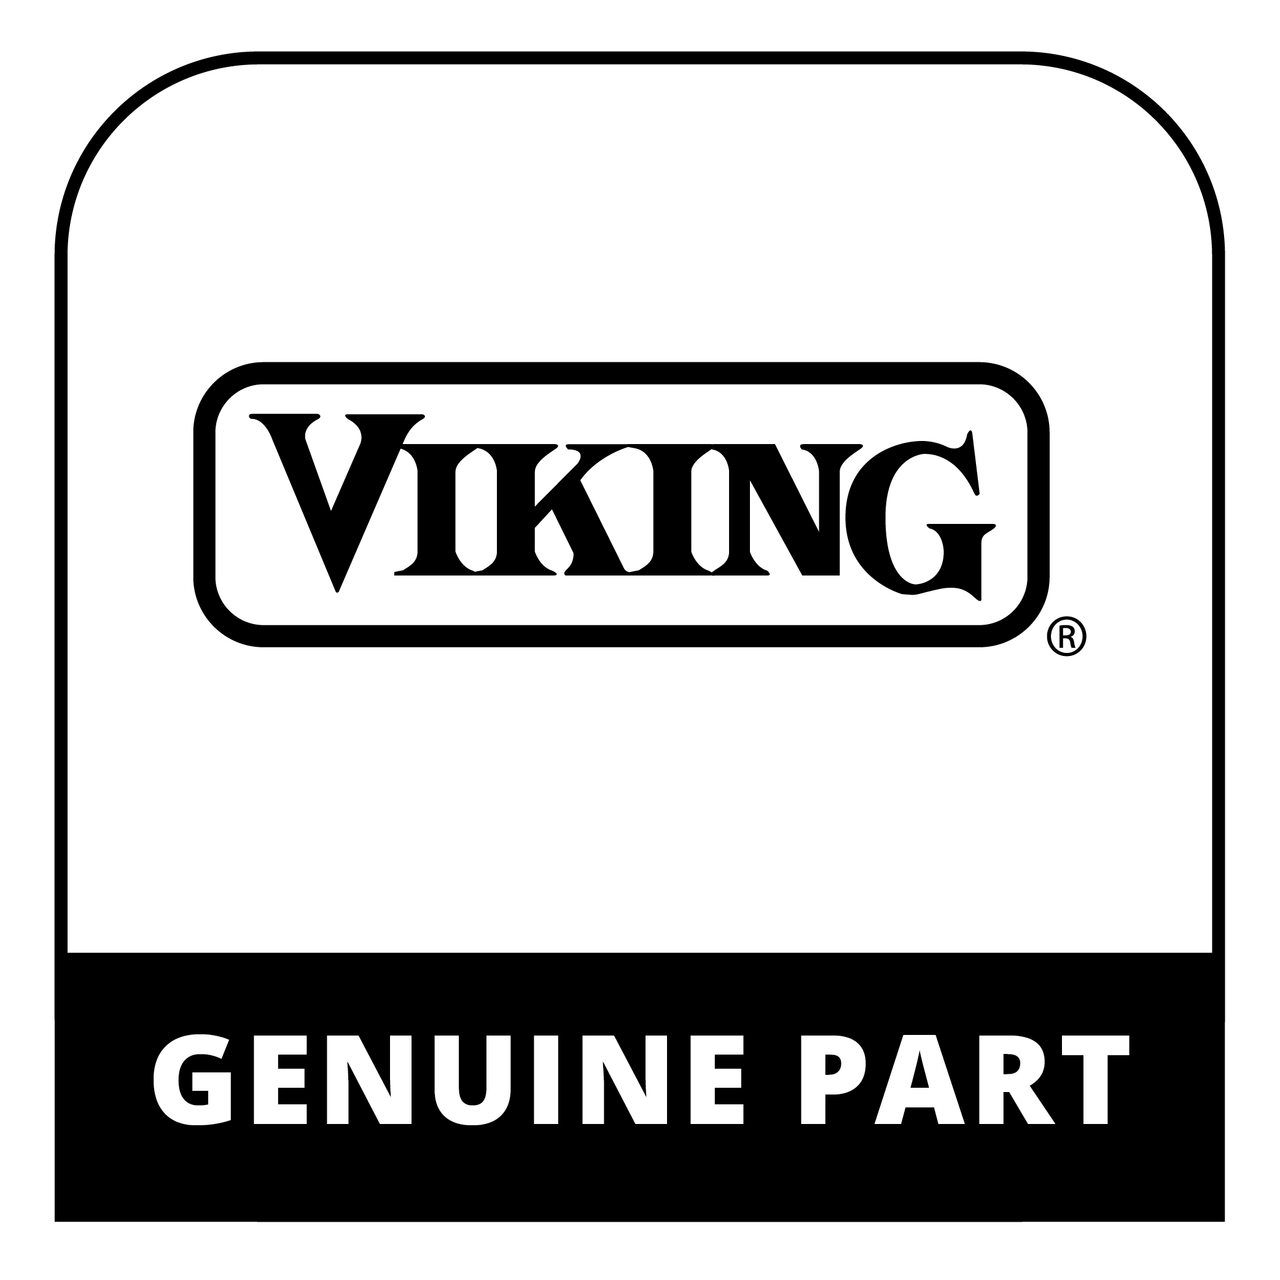 Viking J10010851 - DOOR HEAT SINK - Genuine Viking Part